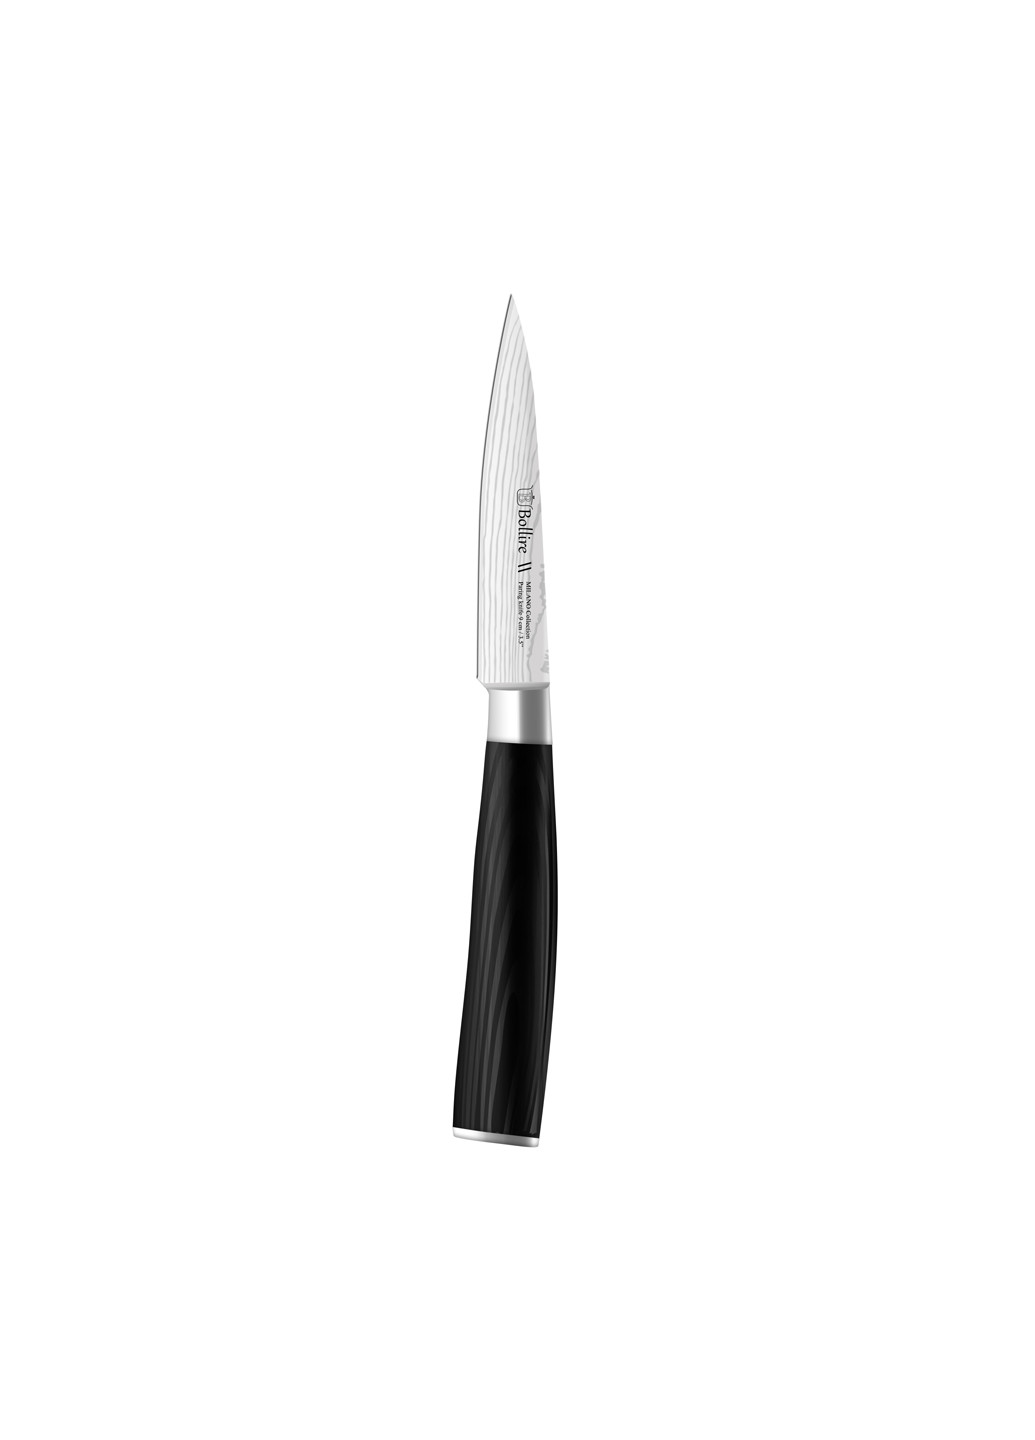 Нож для чистки овощей Milano Bollire br-6201 (250197874)